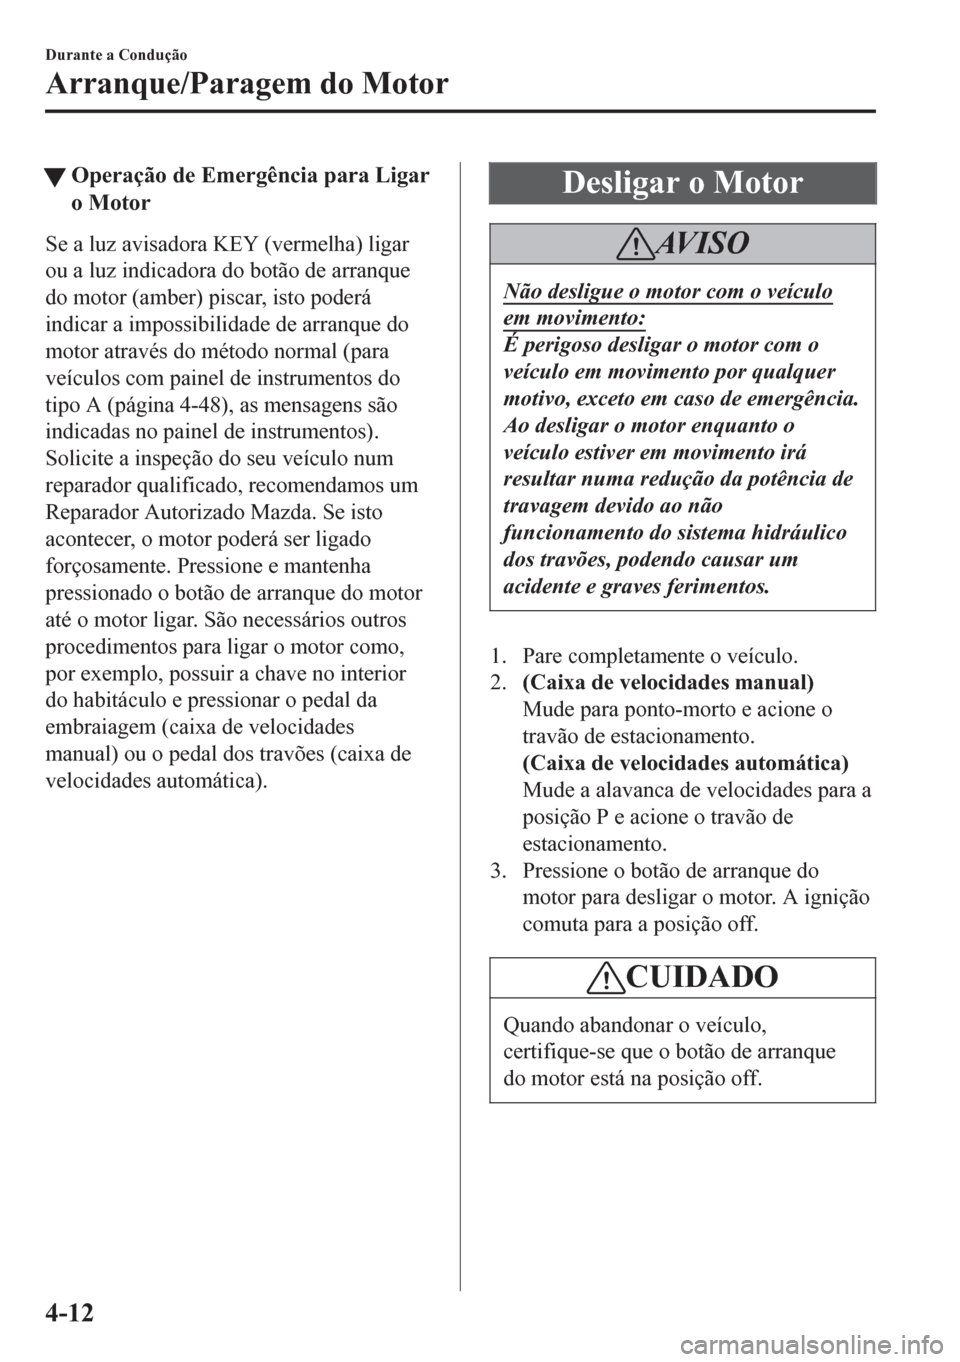 MAZDA MODEL 6 2016  Manual do proprietário (in Portuguese) tOperação de Emergência para Ligar
o Motor
Se a luz avisadora KEY (vermelha) ligar
ou a luz indicadora do botão de arranque
do motor (amber) piscar, isto poderá
indicar a impossibilidade de arran